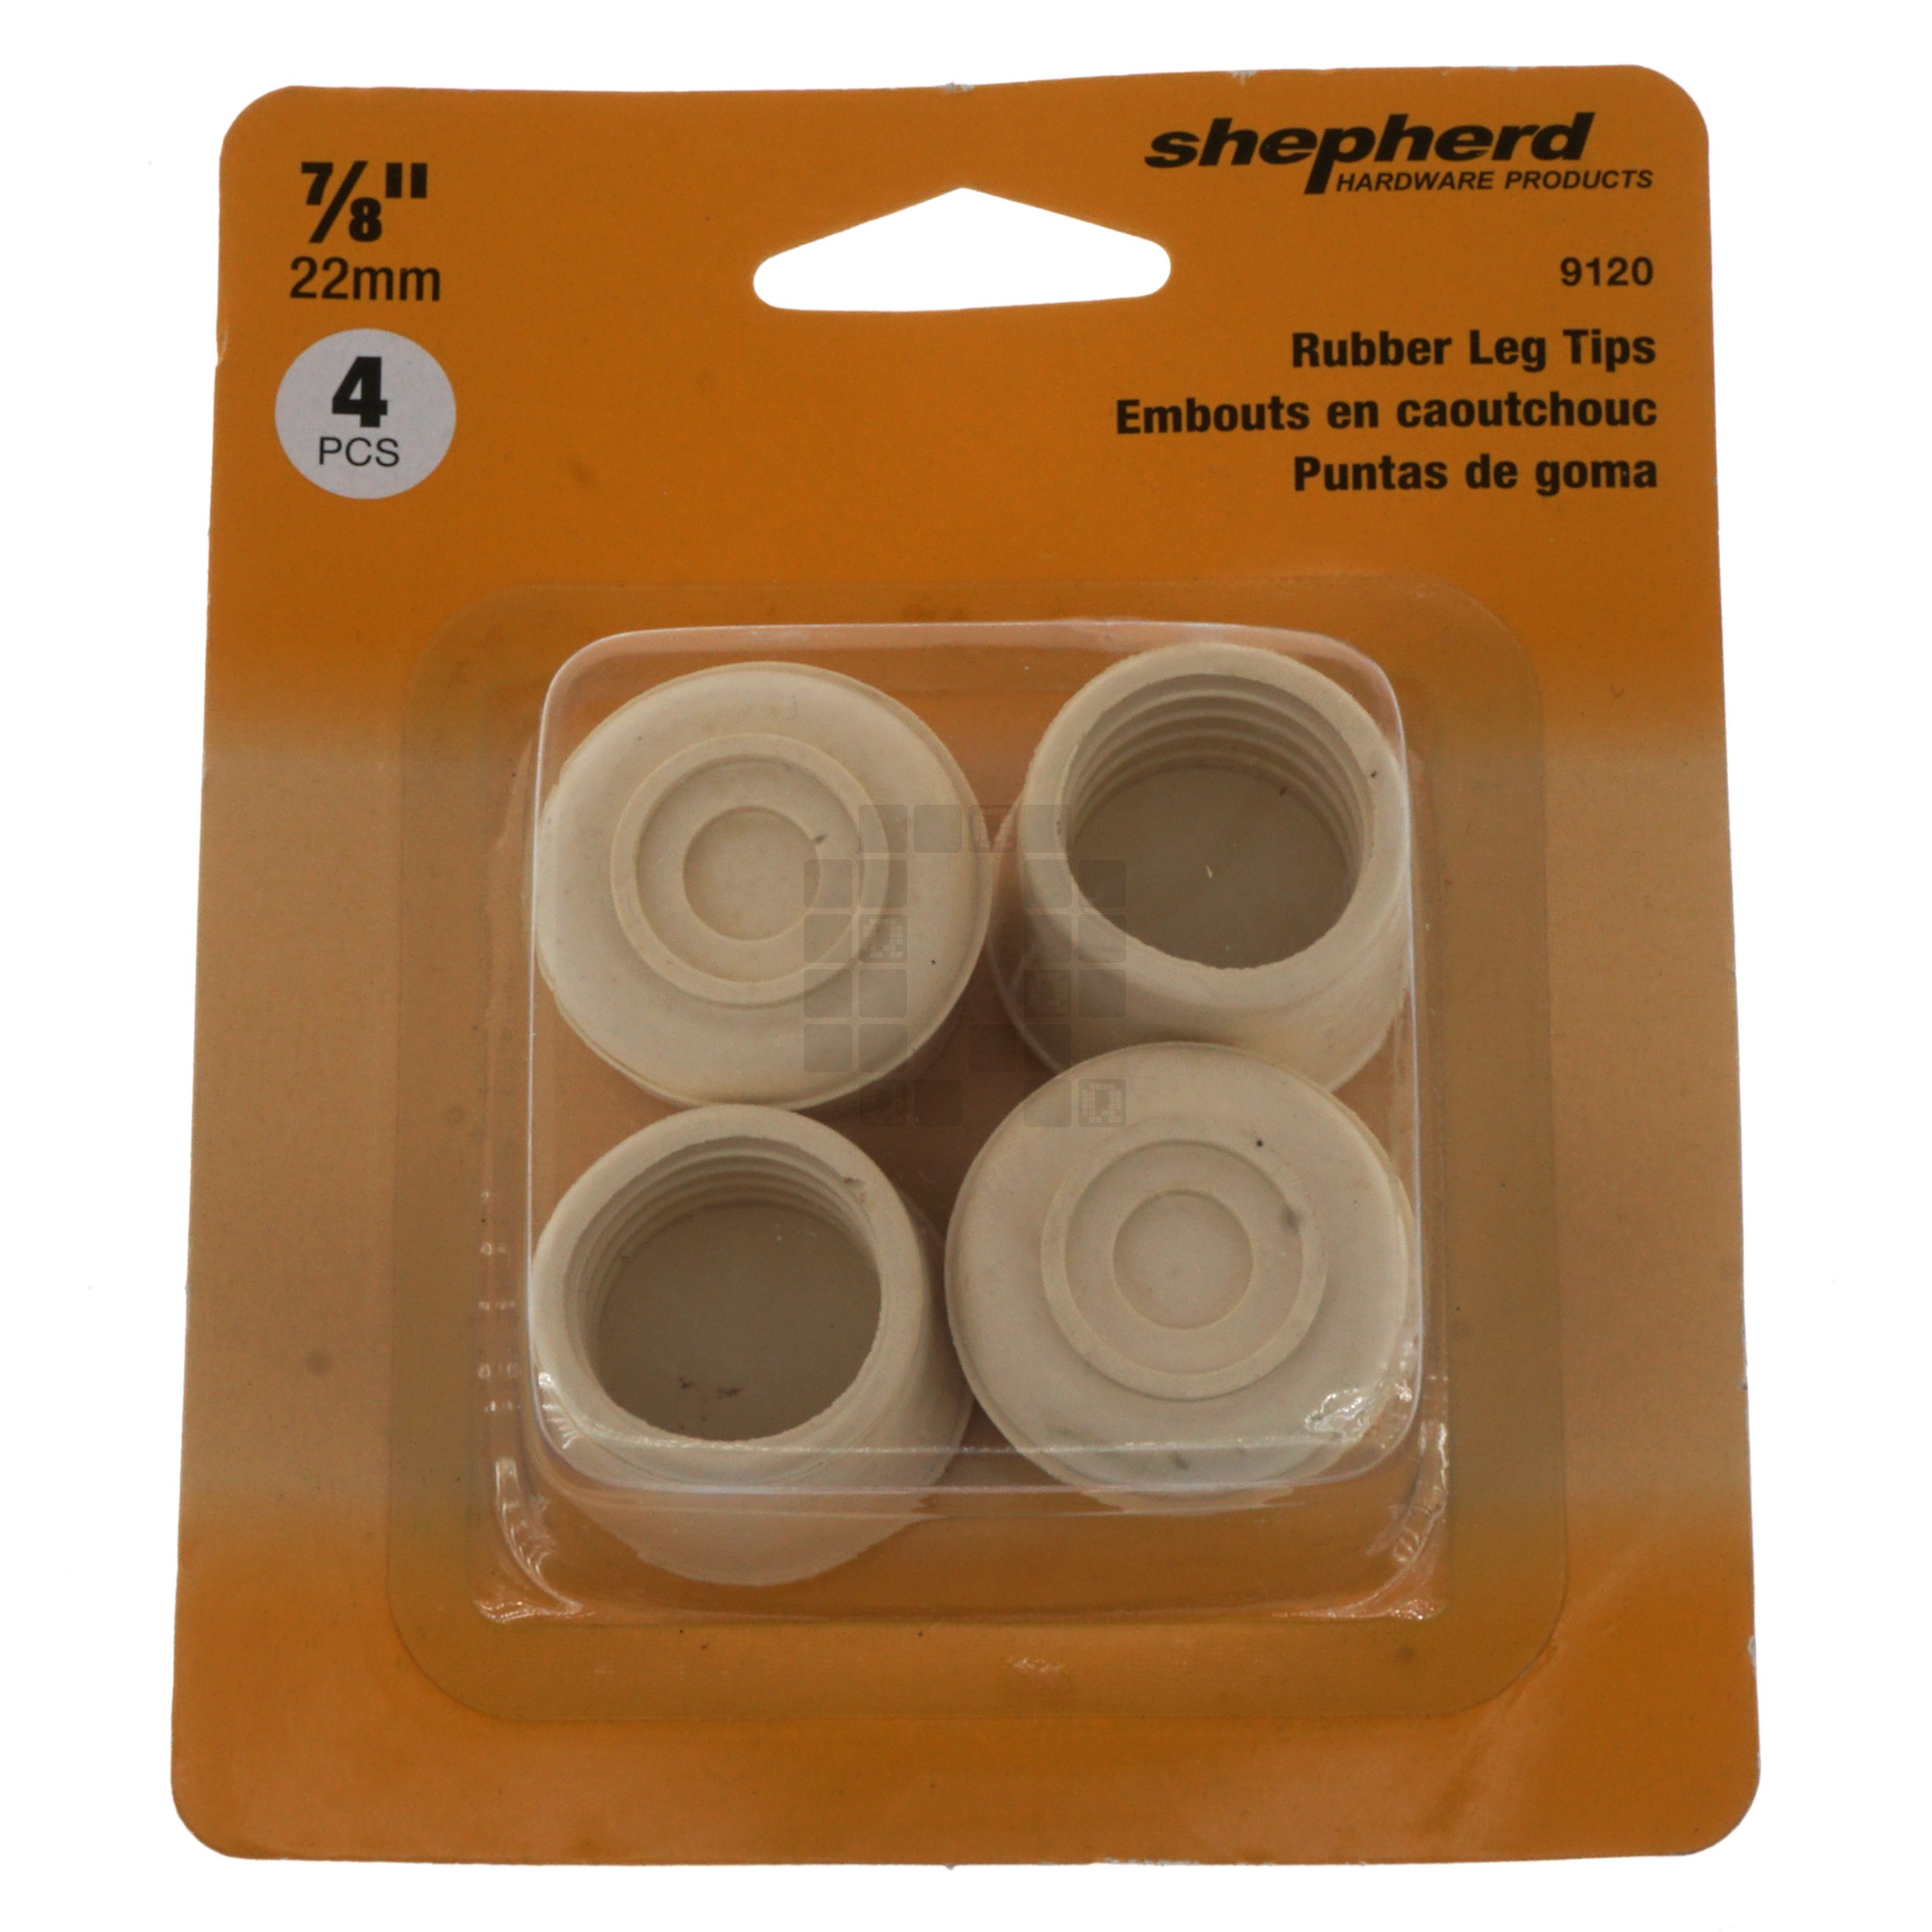 Shepherd 9120 Off-White Rubber Leg Tips, 4 Pack, 7/8" or 22mm